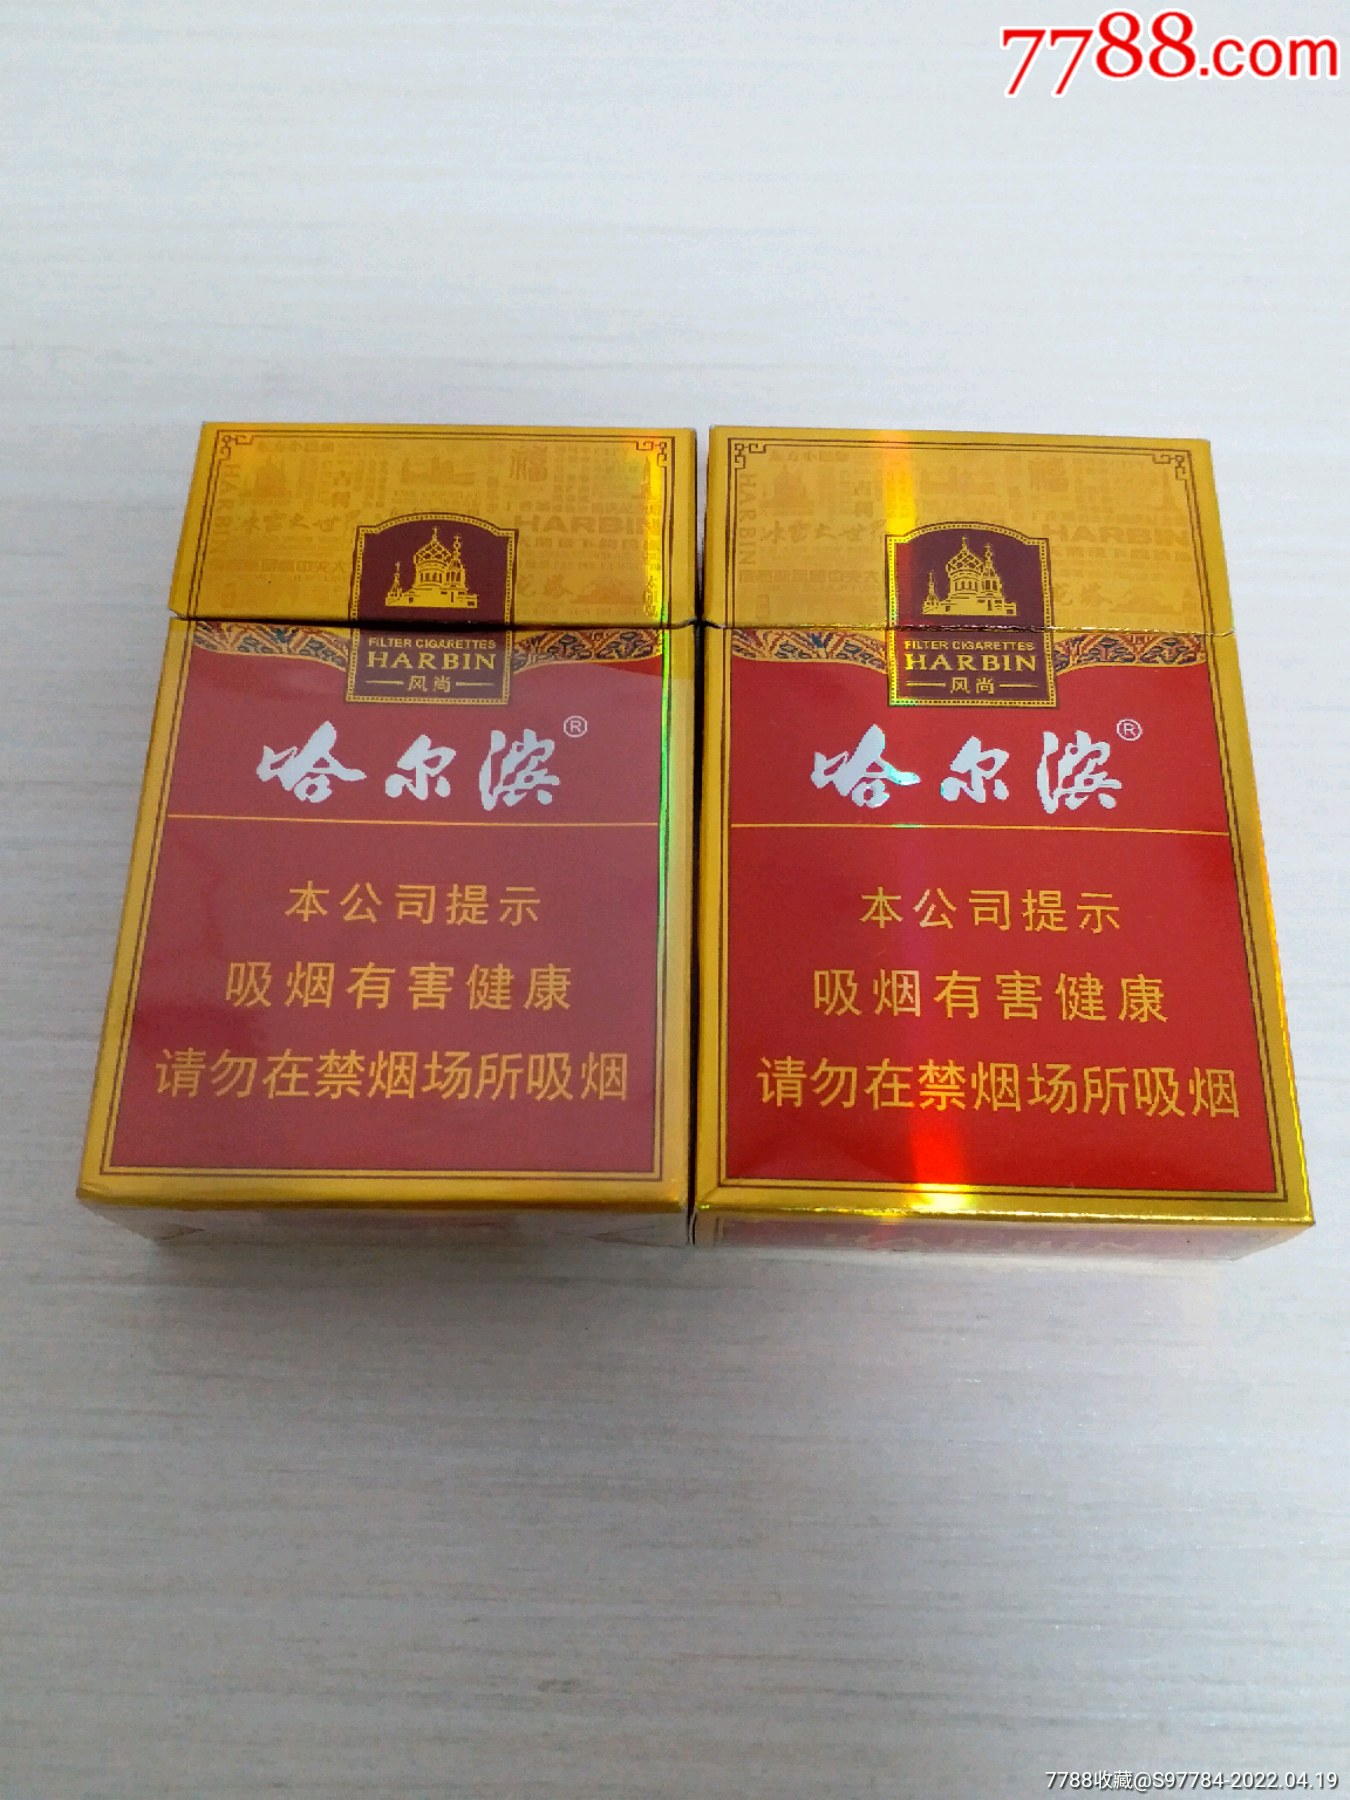 哈尔滨香烟风尚图片